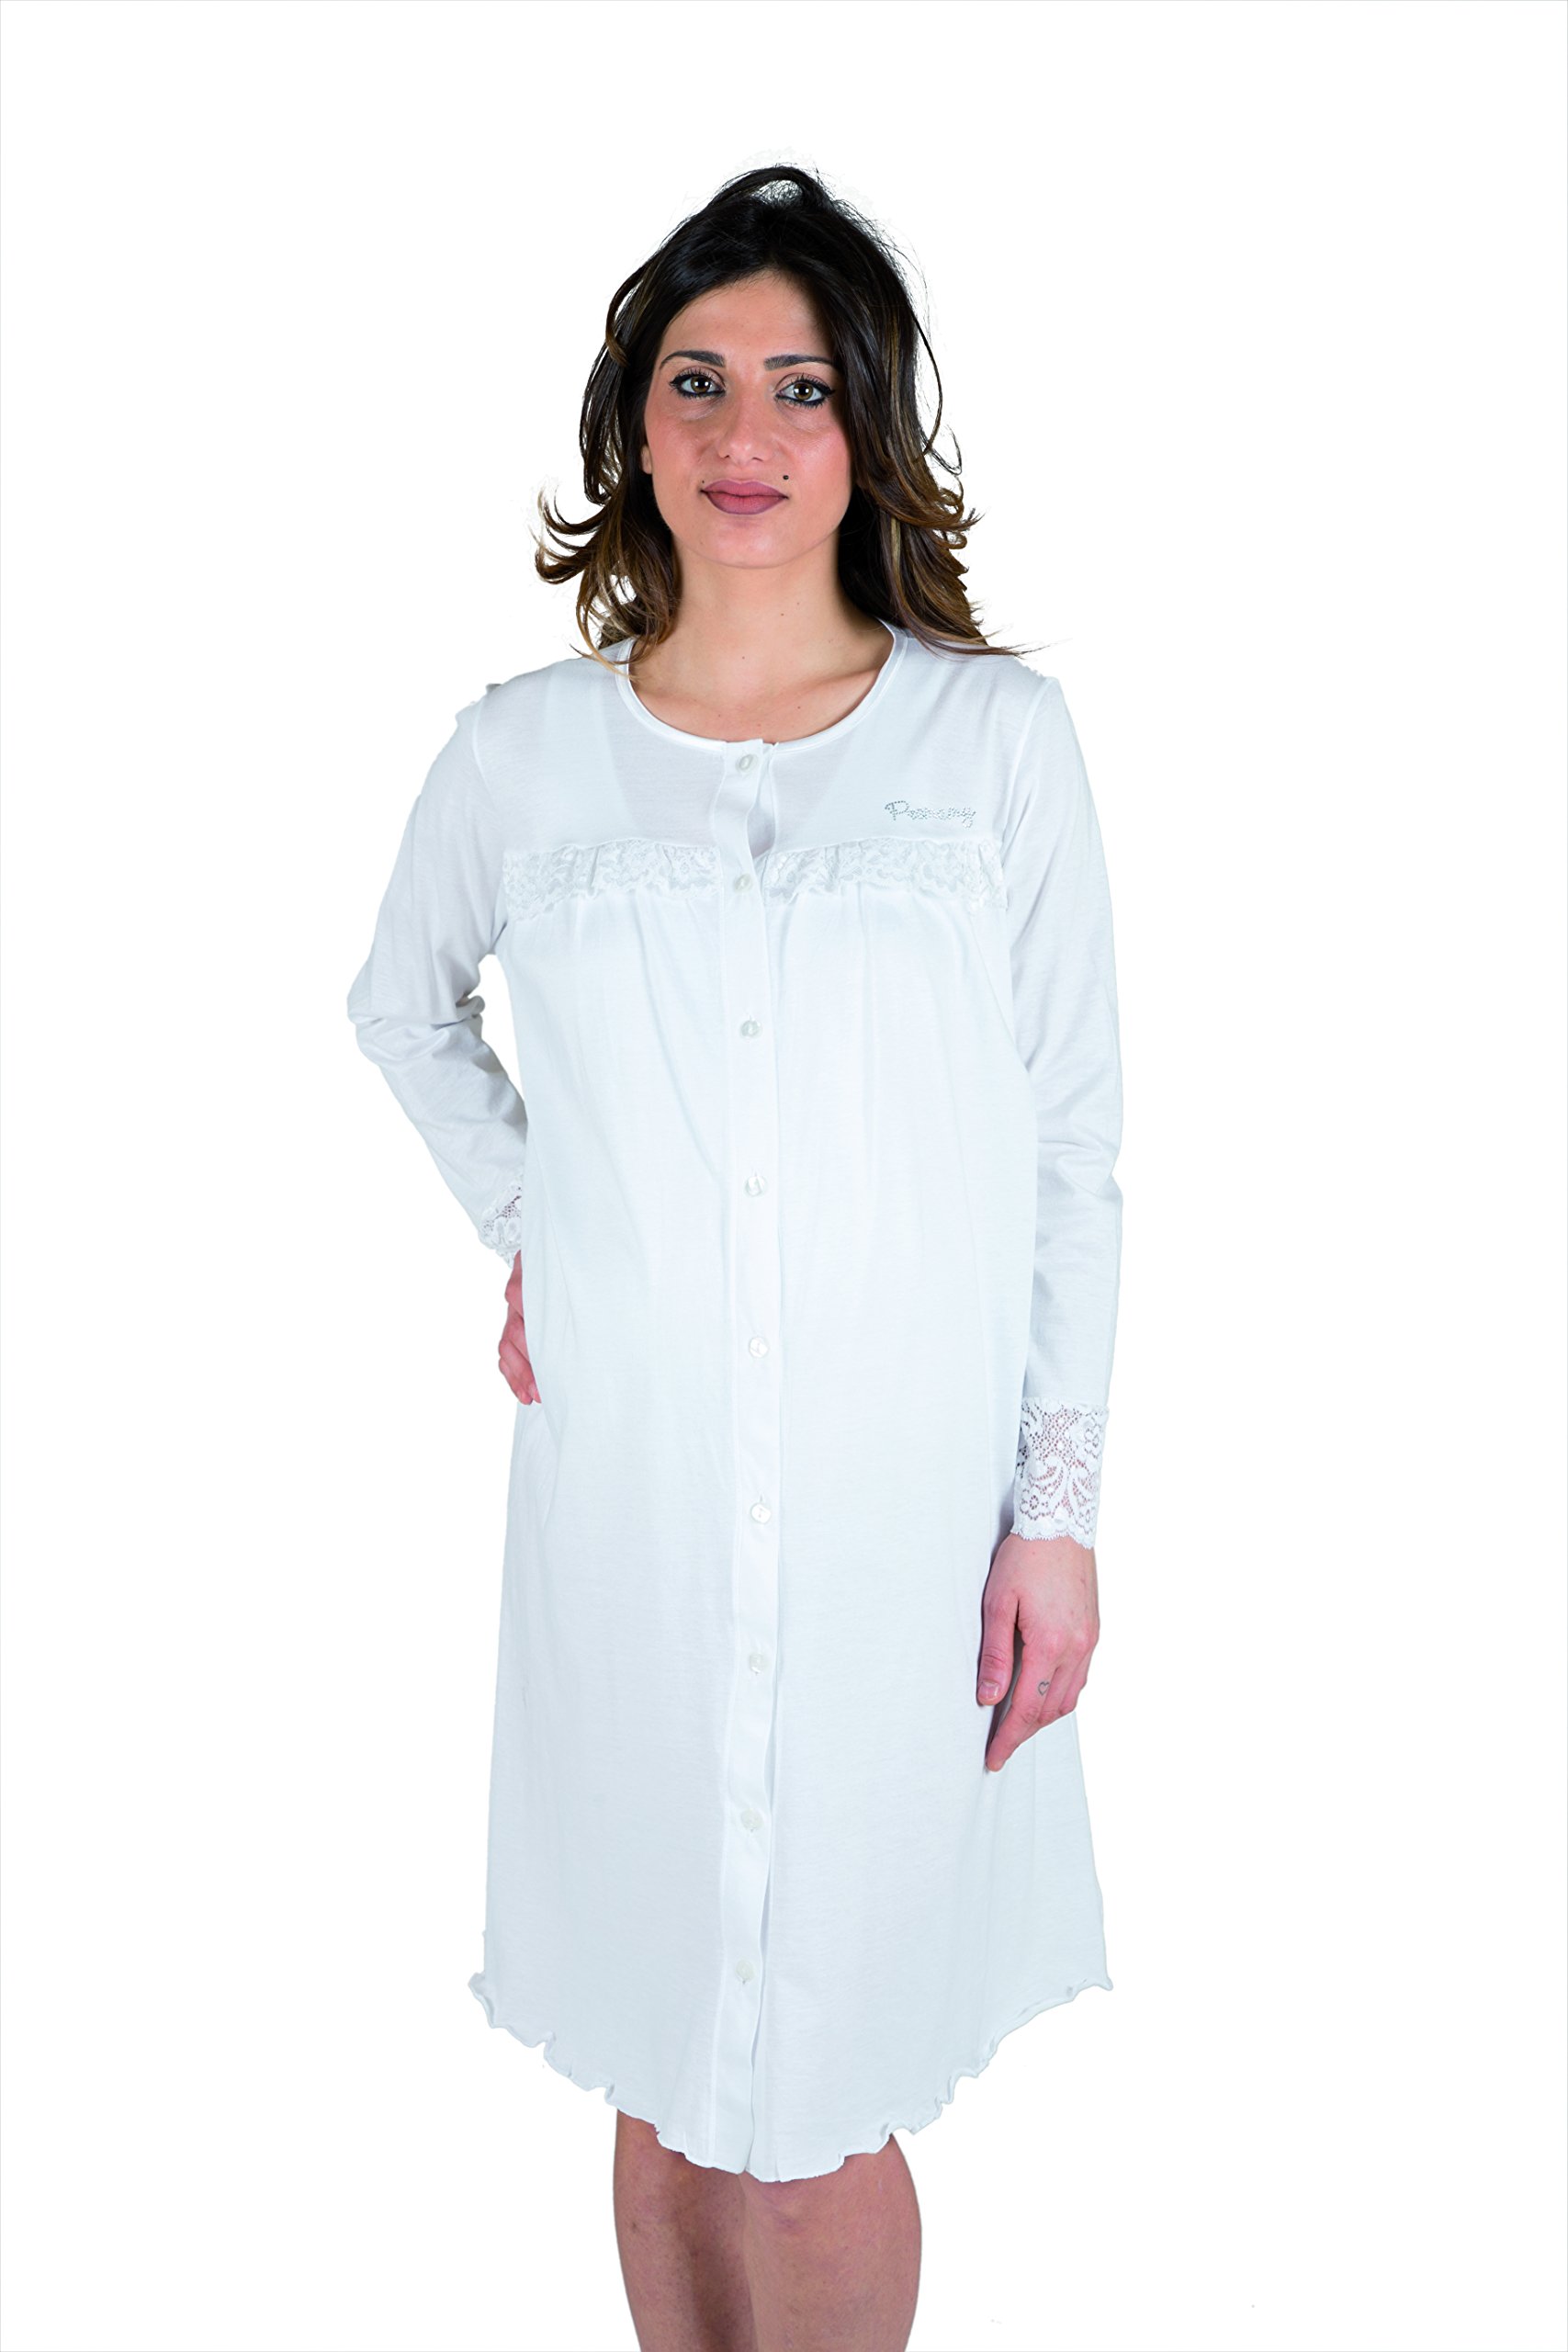 Premamy - Klinisches Shirt für Mutterschaft, offene Front Kleid, Jersey Baumwolle, prä-Post-Partum - Weiß - VI (XL)